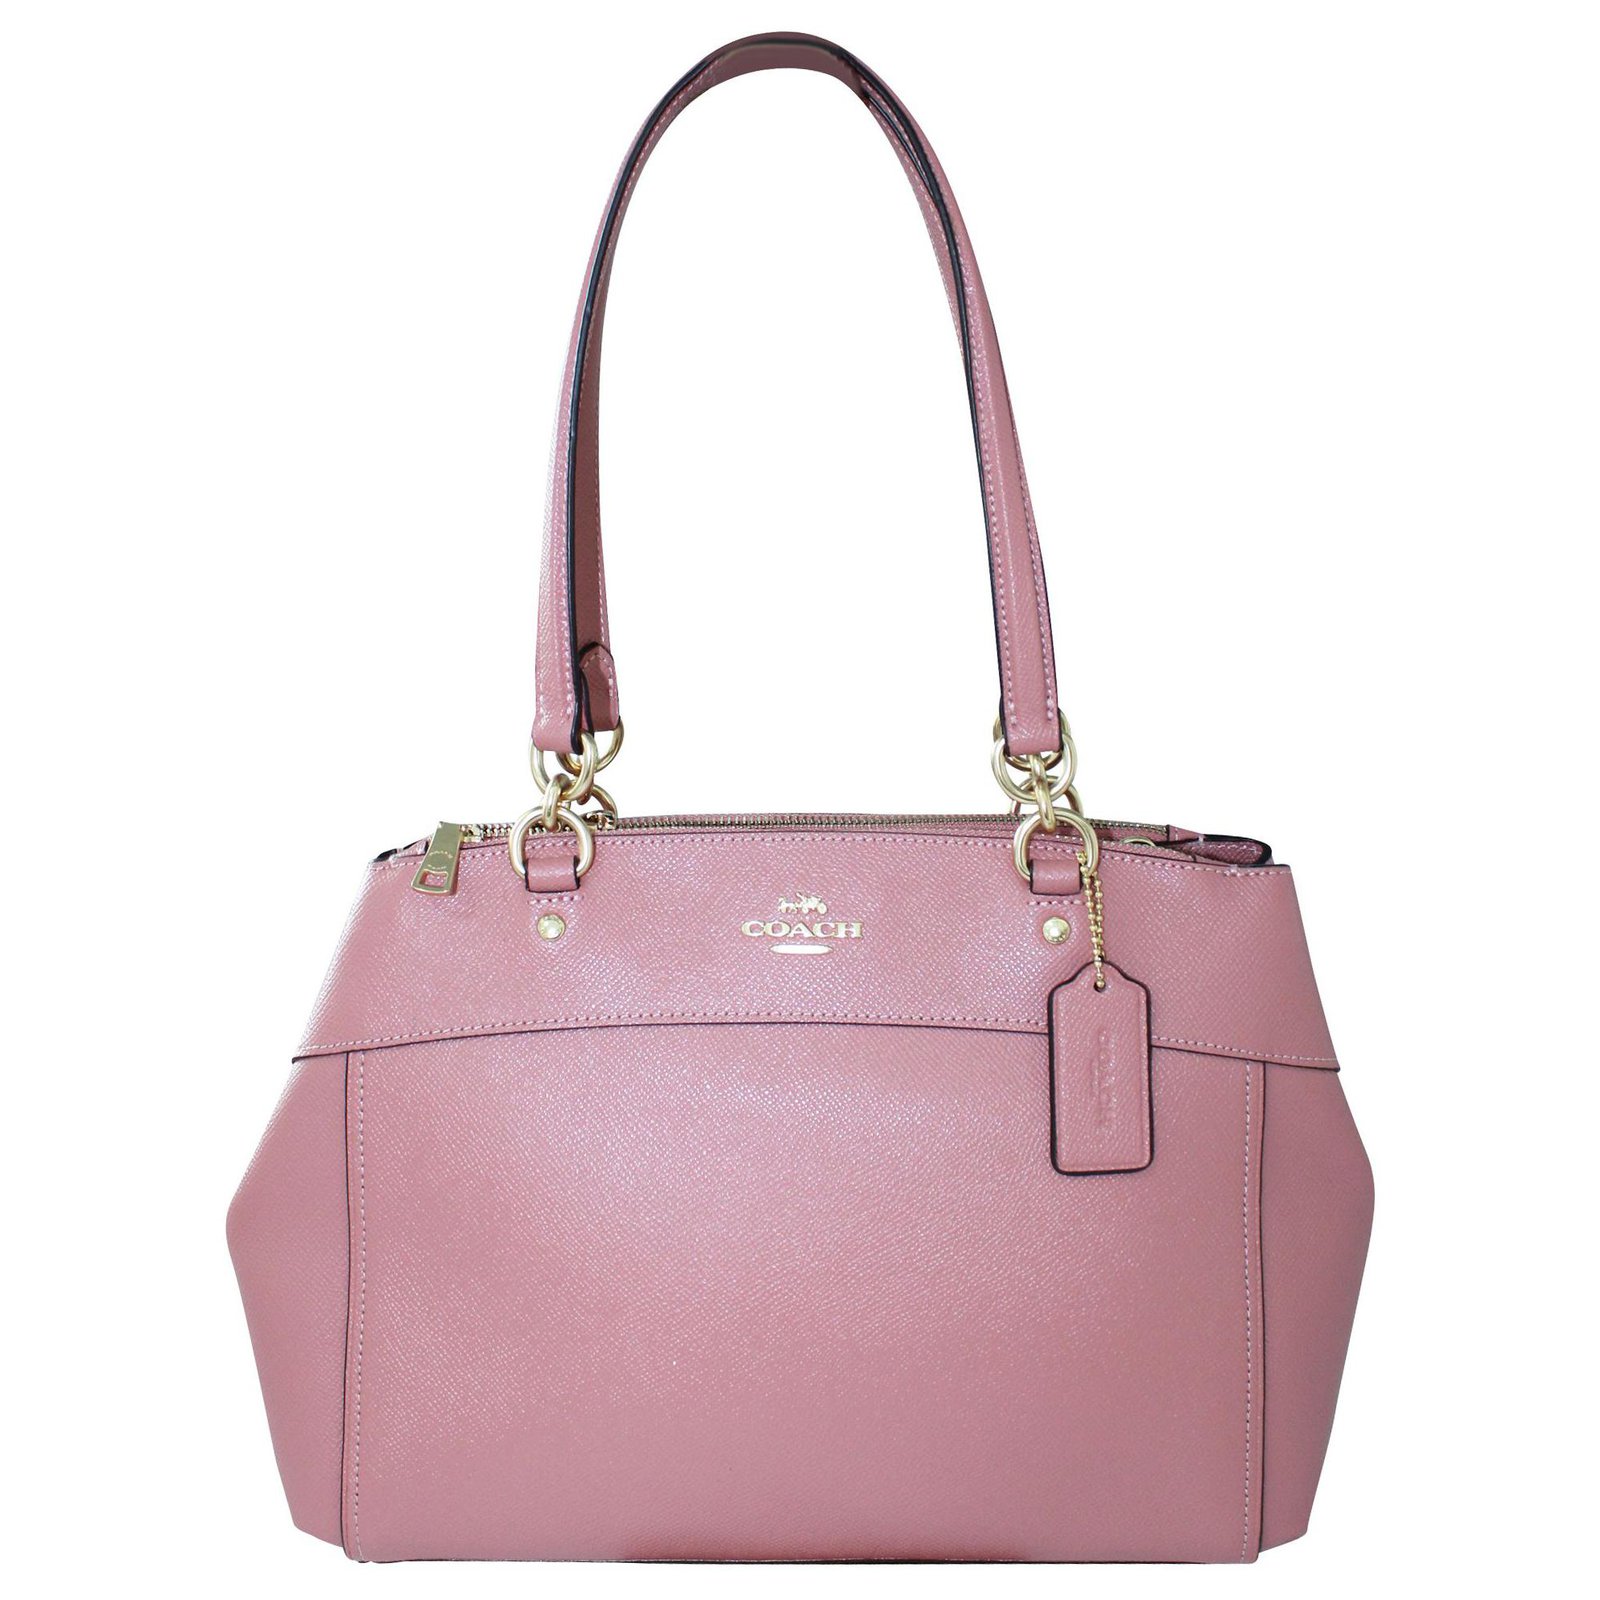 Coach Handbag In Light Pink - Gem